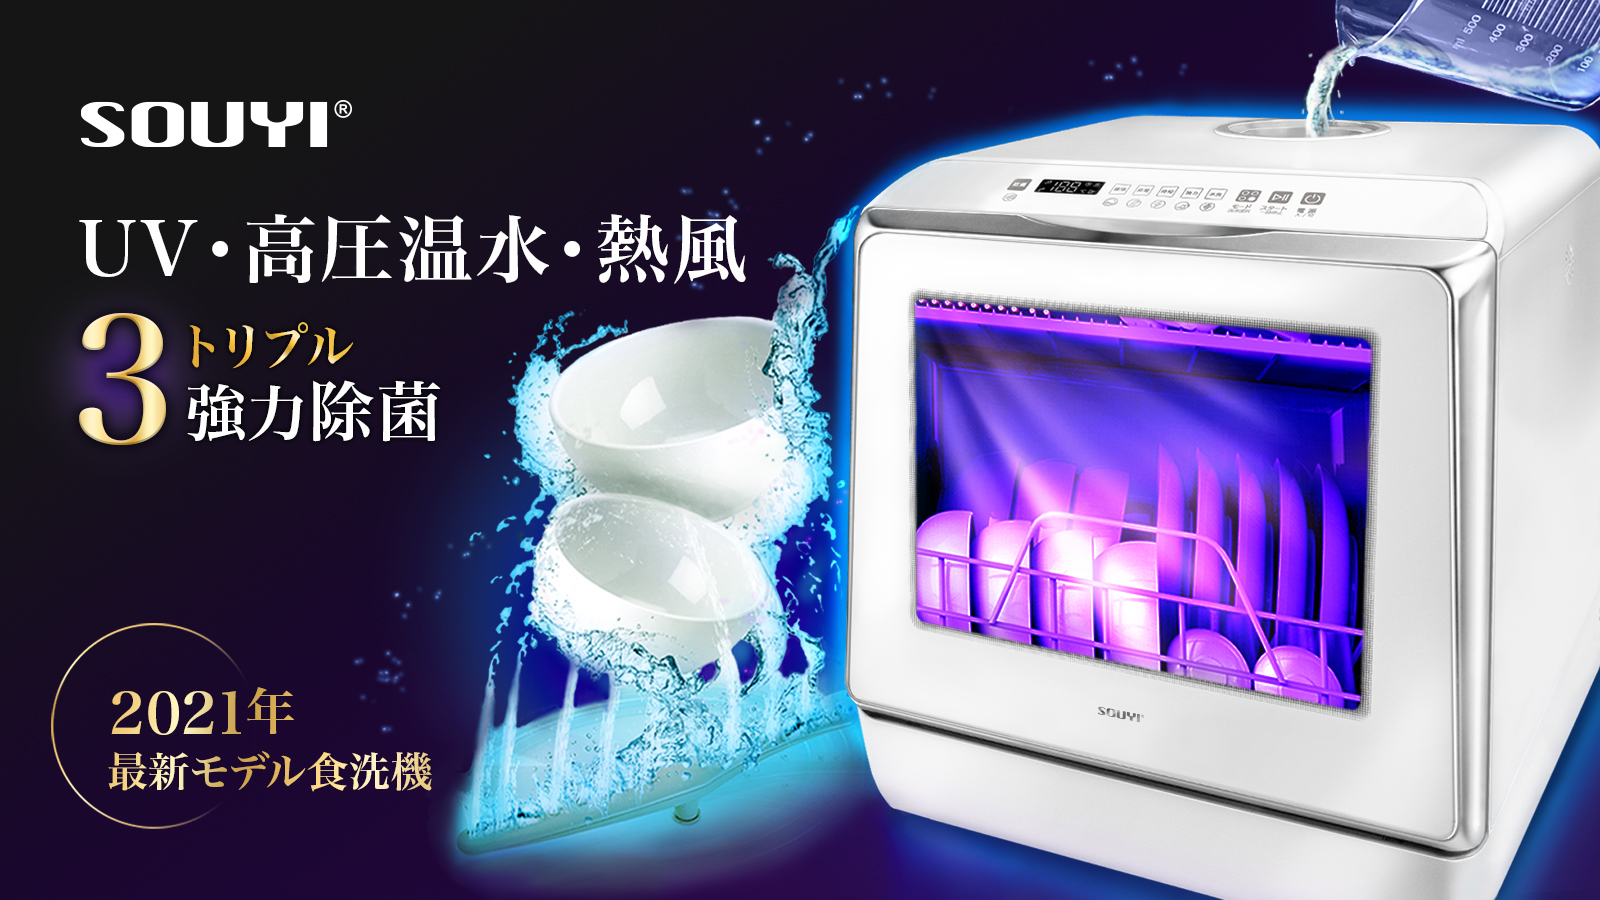 大特価・展示品 SOUYI 食器洗い乾燥機UV機能付き UV・高圧温水・熱風 強力除菌 UV機能付きコンパクト食洗器 省エネ 節水 マクアケ  食器洗い乾燥機